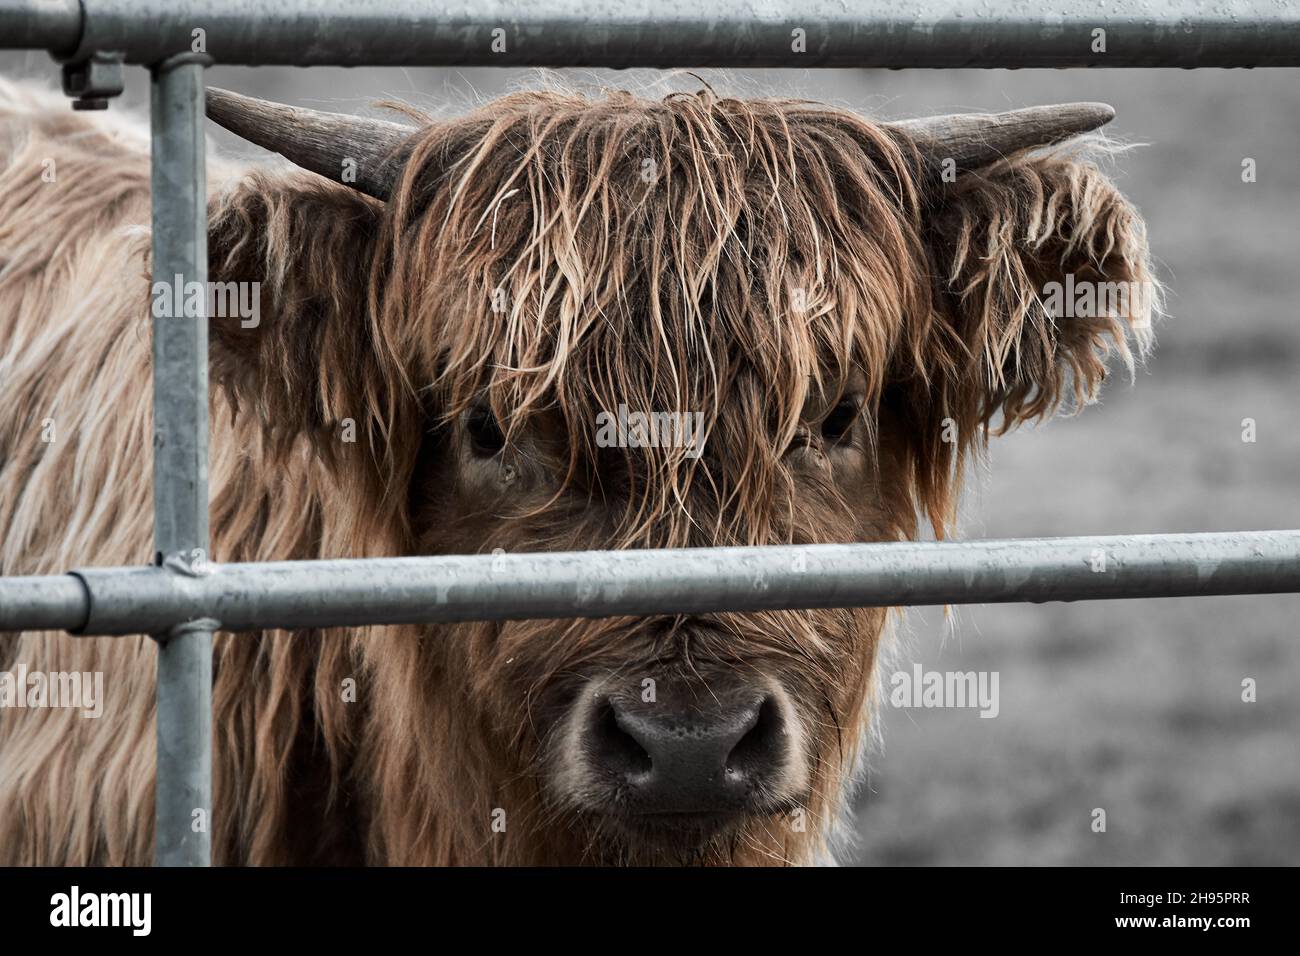 Primo piano di un giovane vitello delle mucche delle Highland dietro le barre metalliche guardando la fotocamera. Foto Stock